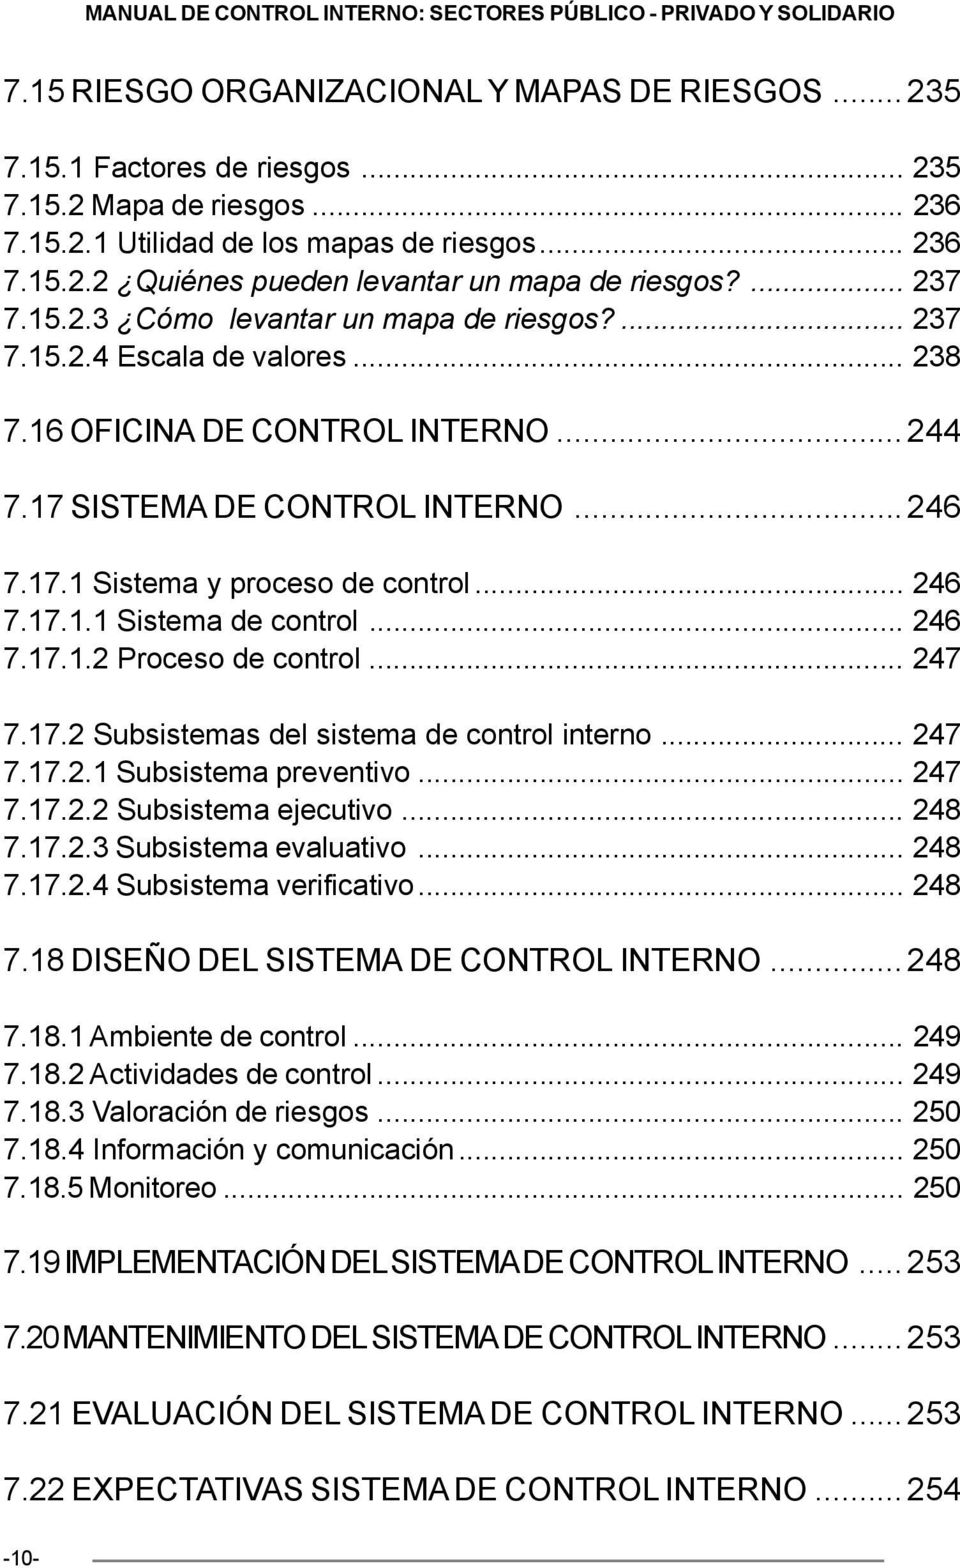 17 SISTEMA DE CONTROL INTERNO...246 7.17.1 Sistema y proceso de control... 246 7.17.1.1 Sistema de control... 246 7.17.1.2 Proceso de control... 247 7.17.2 Subsistemas del sistema de control interno.